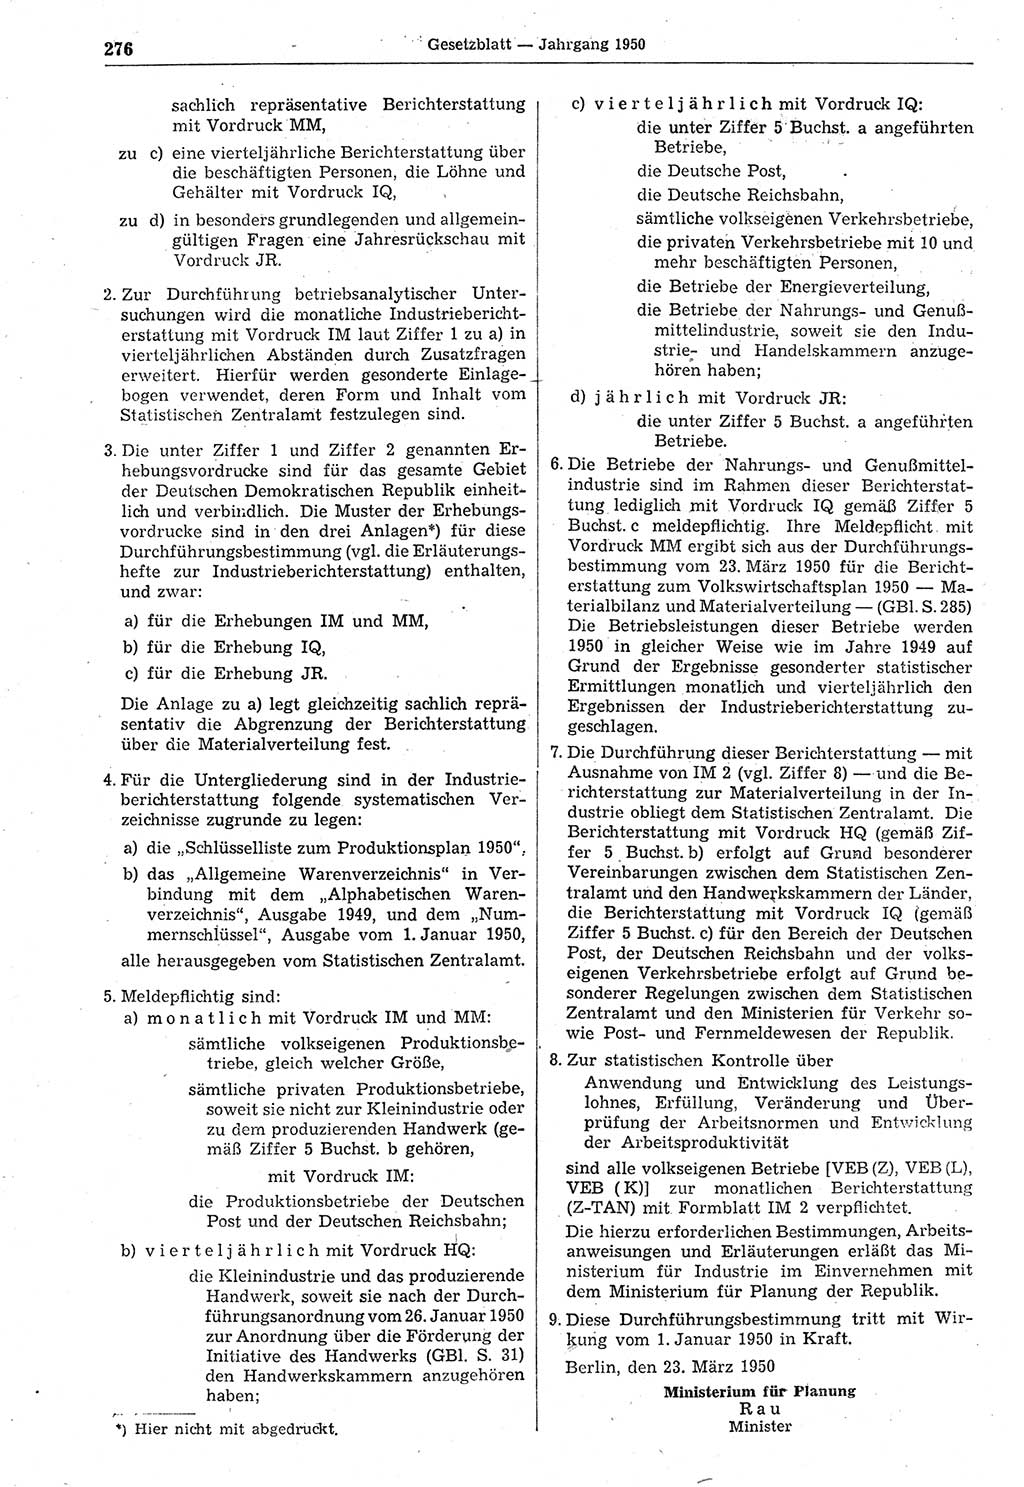 Gesetzblatt (GBl.) der Deutschen Demokratischen Republik (DDR) 1950, Seite 276 (GBl. DDR 1950, S. 276)